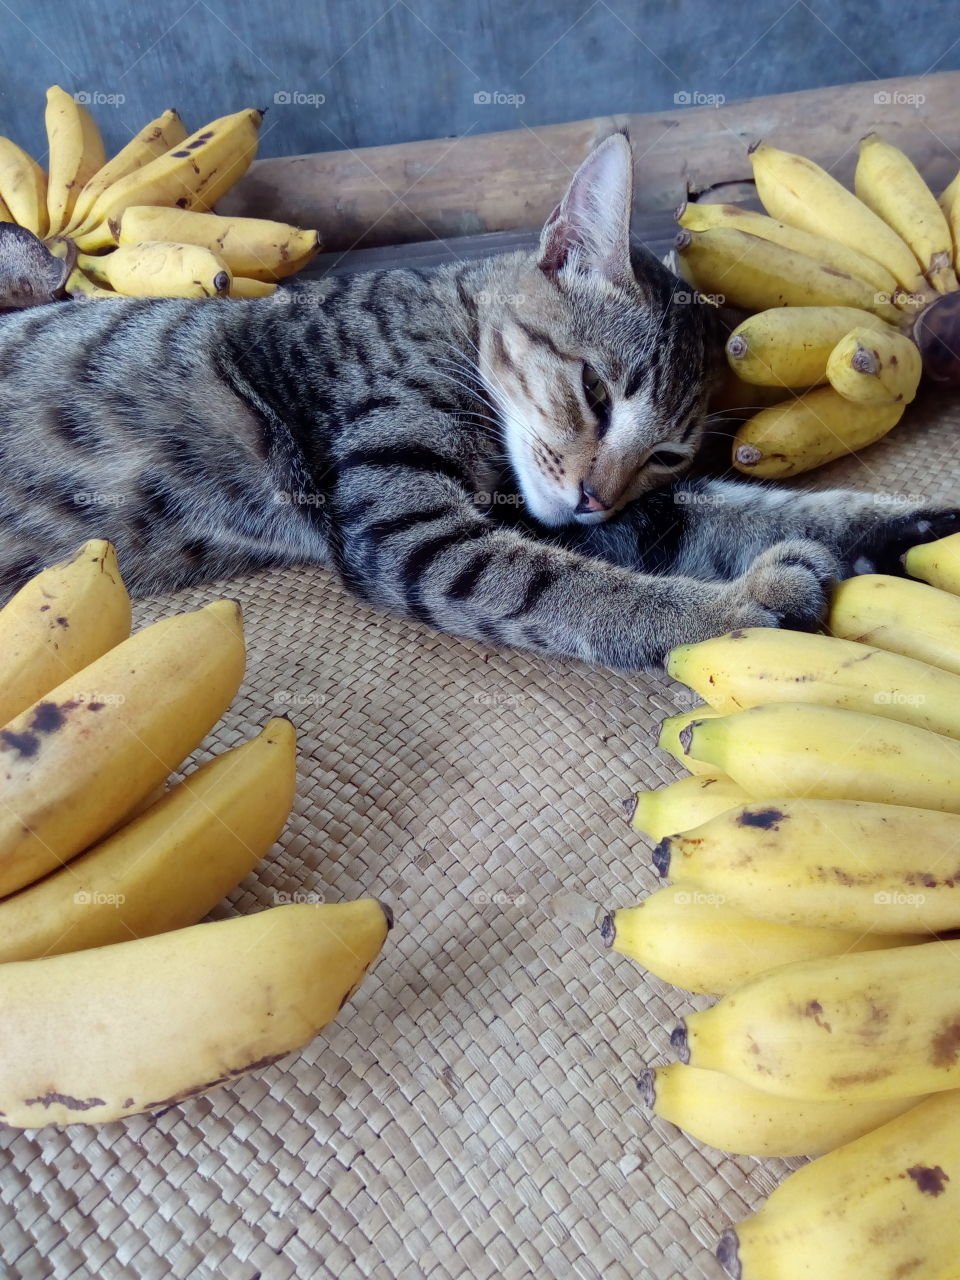 among bananas 04